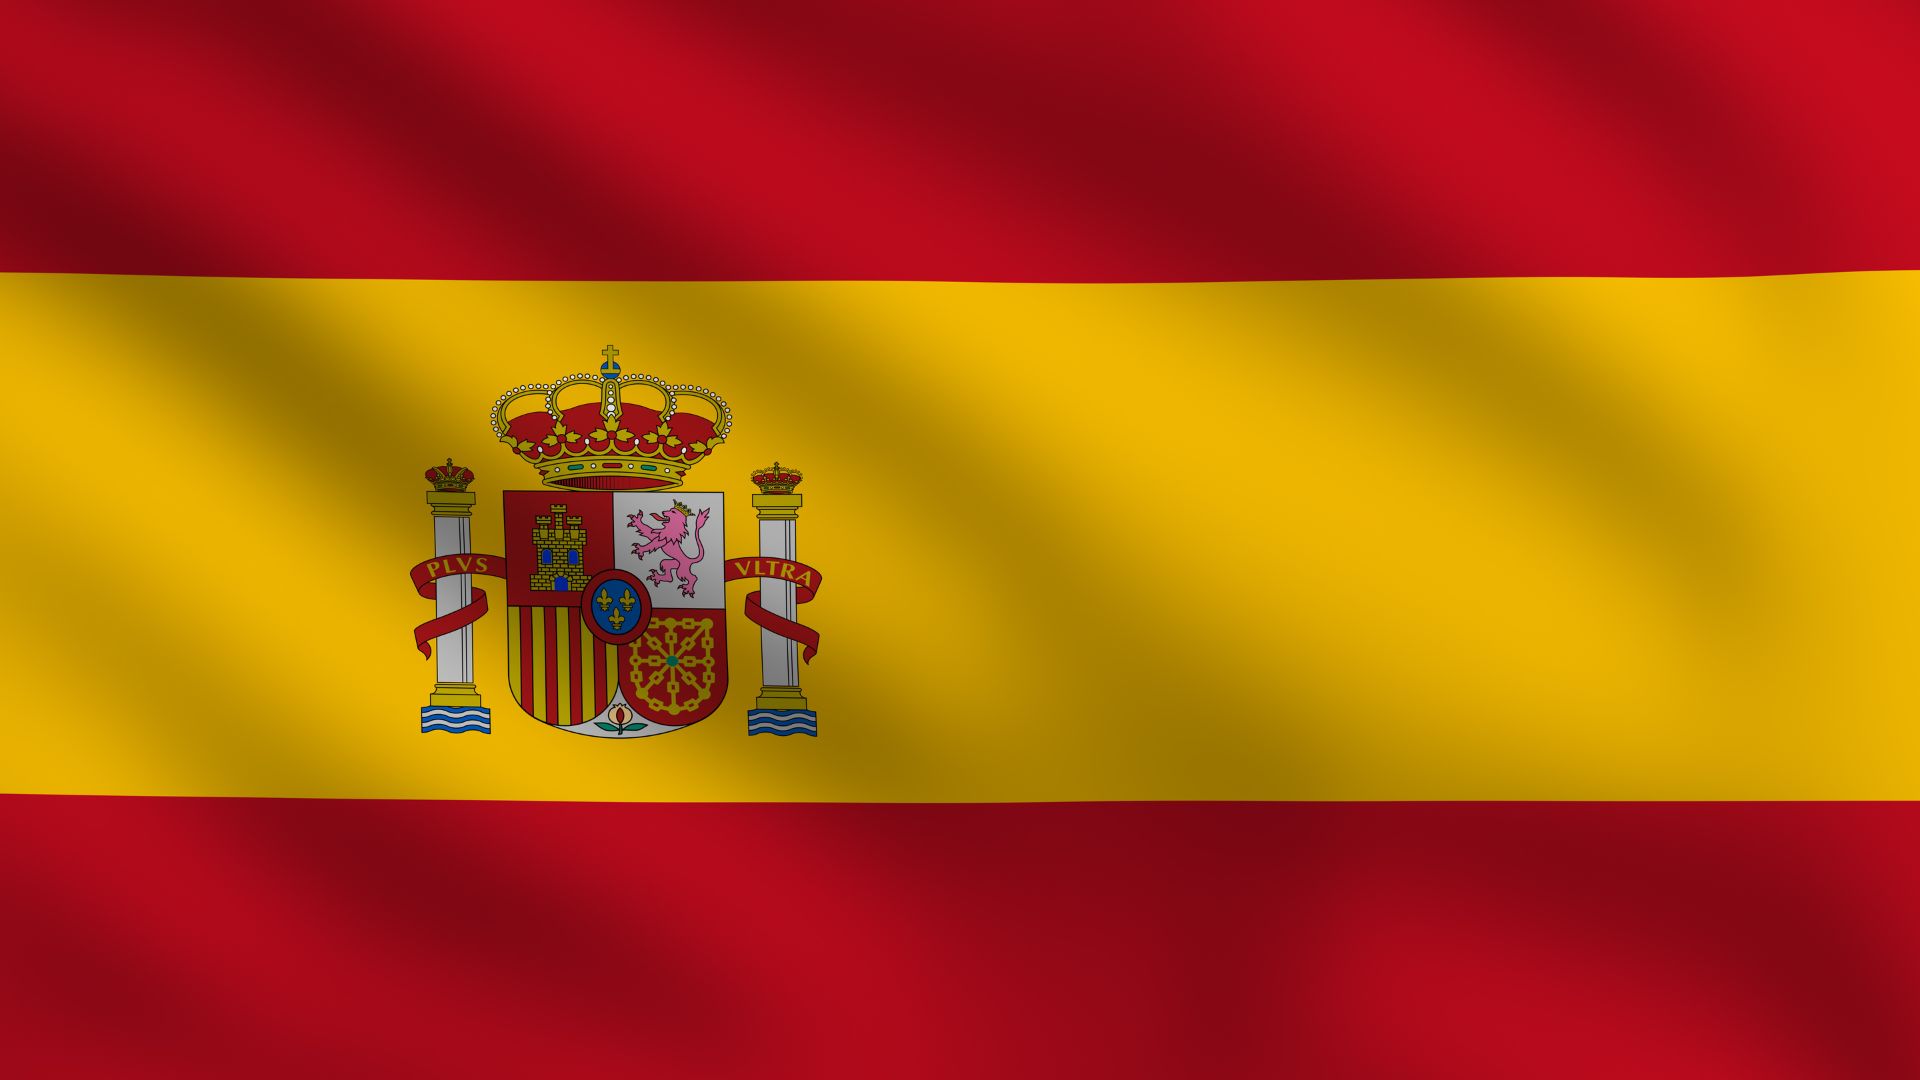 A bandeira da Espanha é formada por três faixas horizontais, vermelha, amarela e vermelha, sendo a amarela de proporção duas vezes superior às vermelhas.